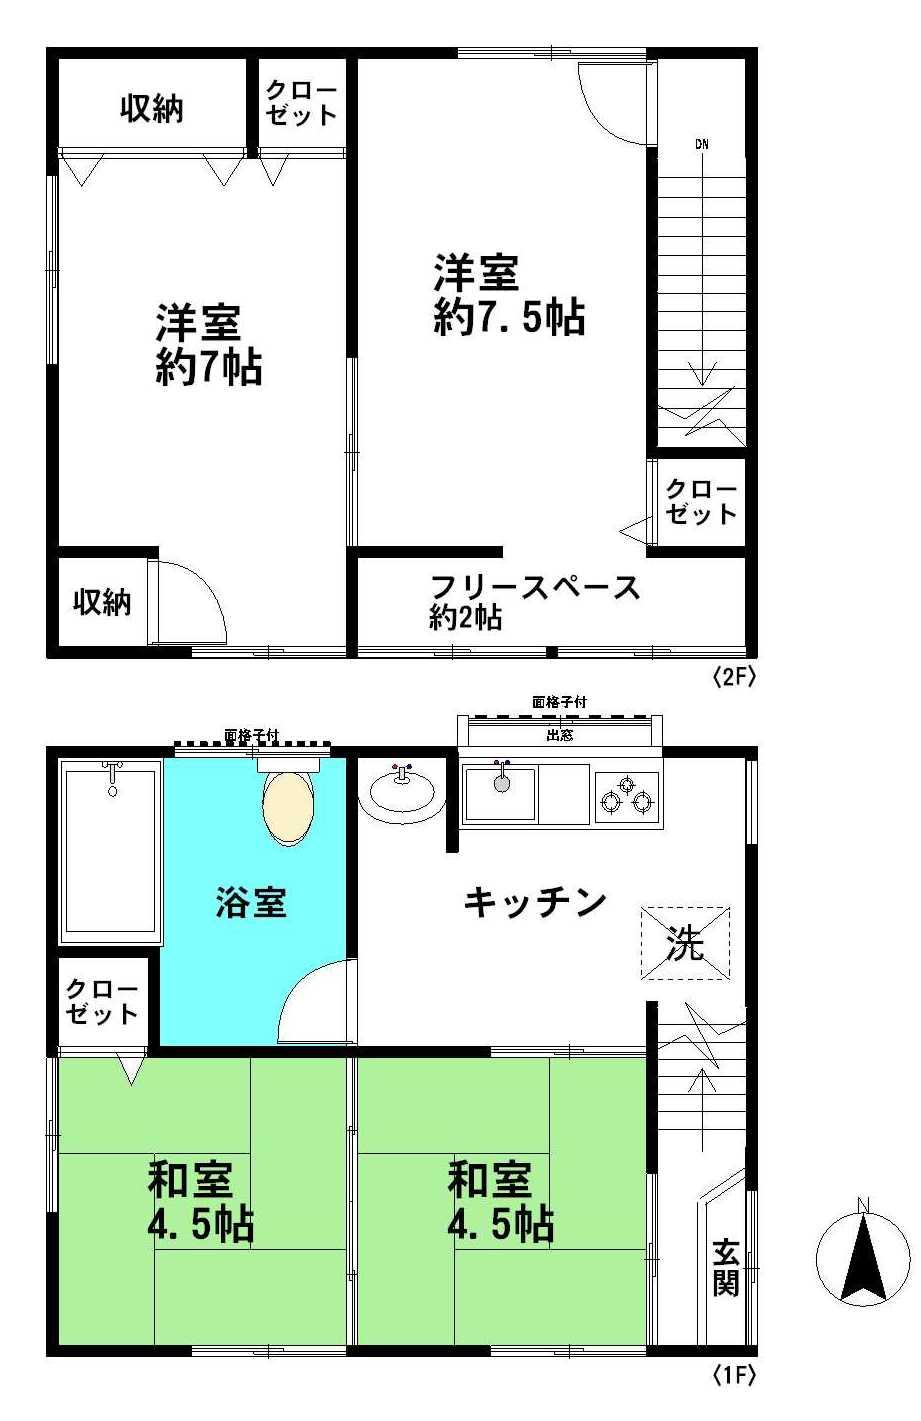 Floor plan. 9.9 million yen, 4DK, Land area 44.09 sq m , Building area 52.04 sq m